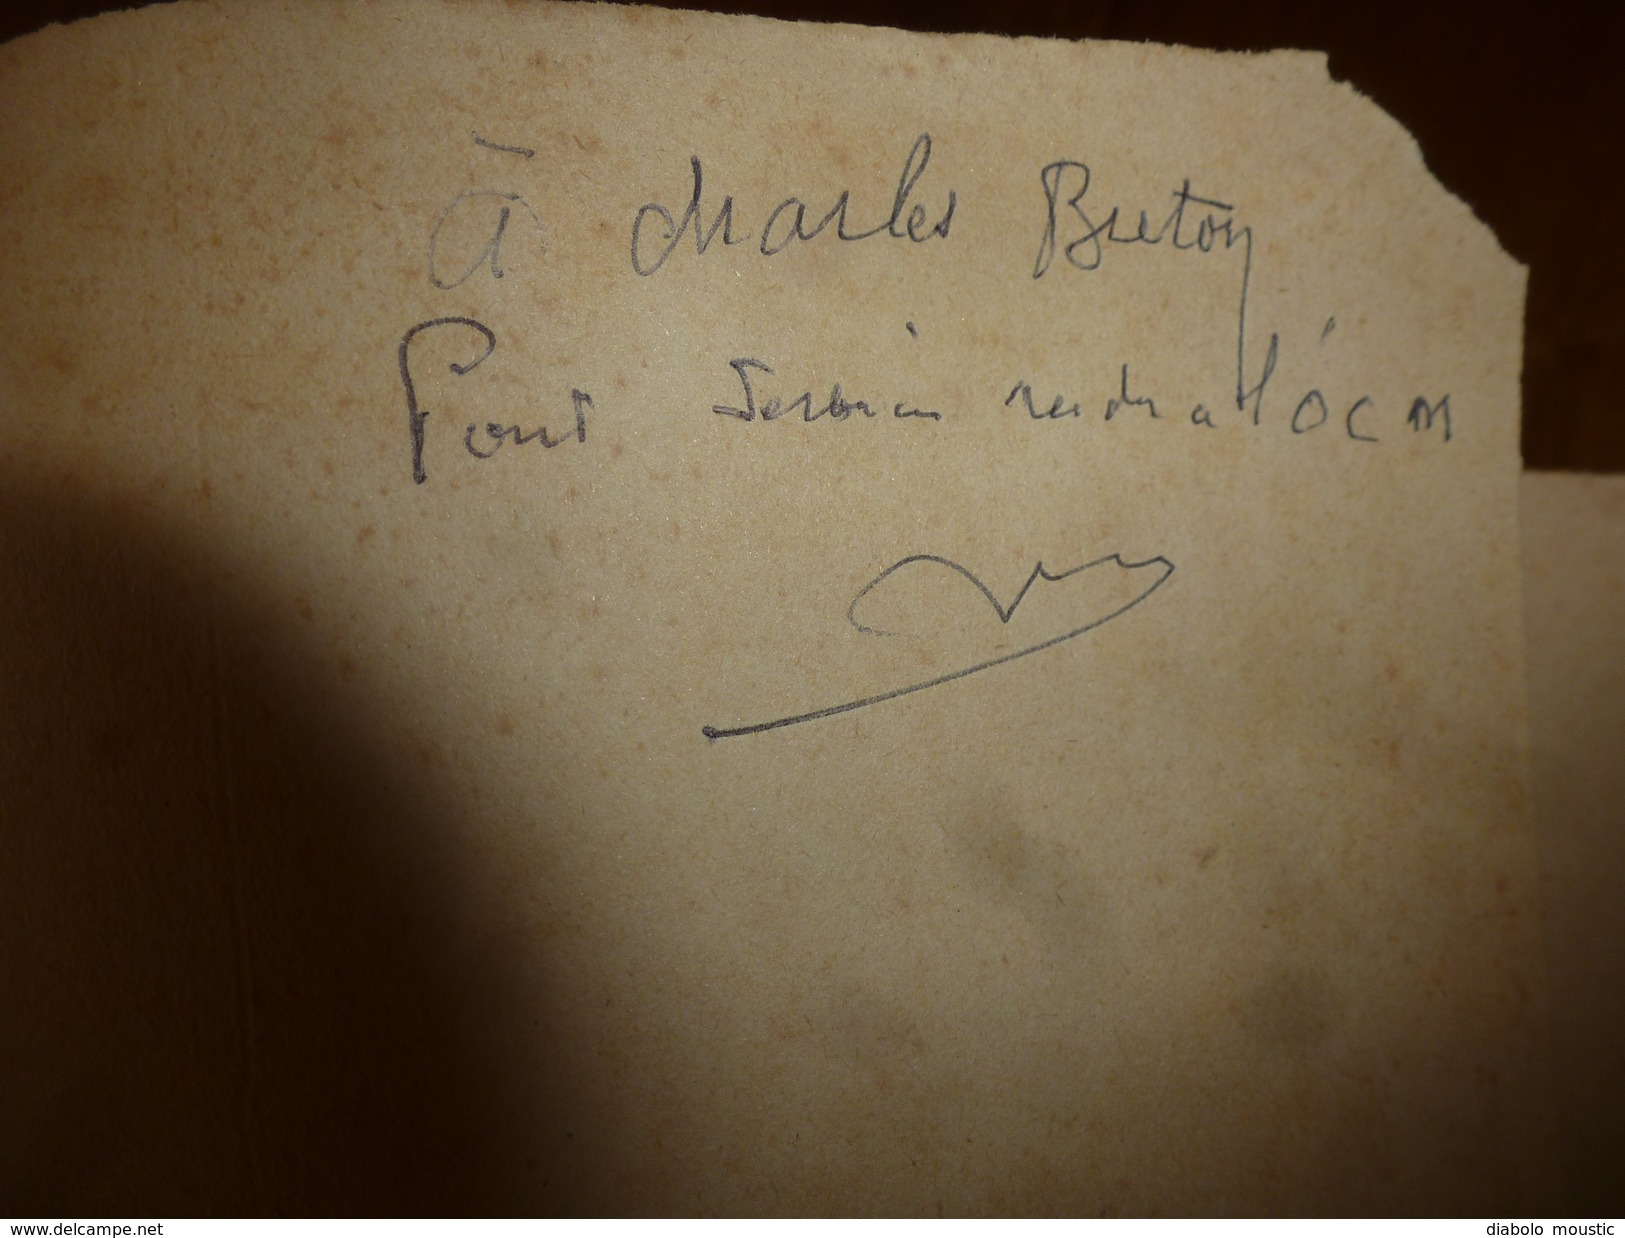 1947 UNE AFFAIRE DE TRAHISON Par REMY Dédicacé à Charles Breton CHEF RESISTANT,pour Service Rendu à L'OCM,photographies - French